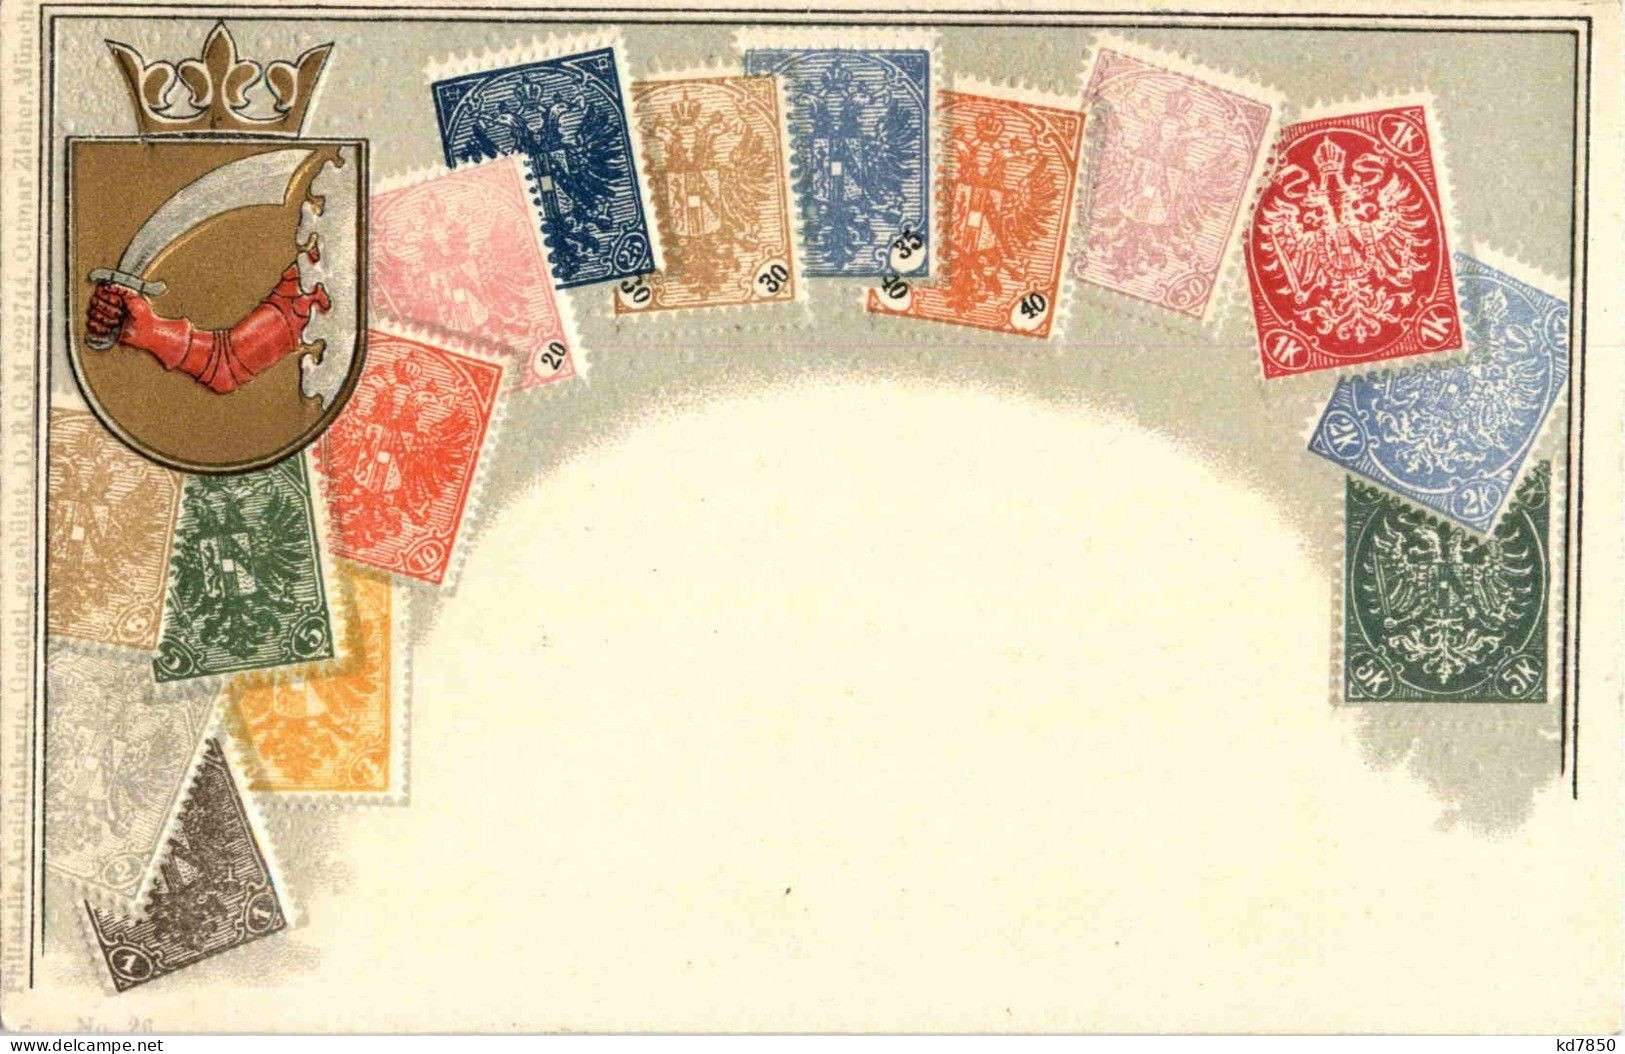 Briefmarken - Stamps - Prägekarte - Briefmarken (Abbildungen)